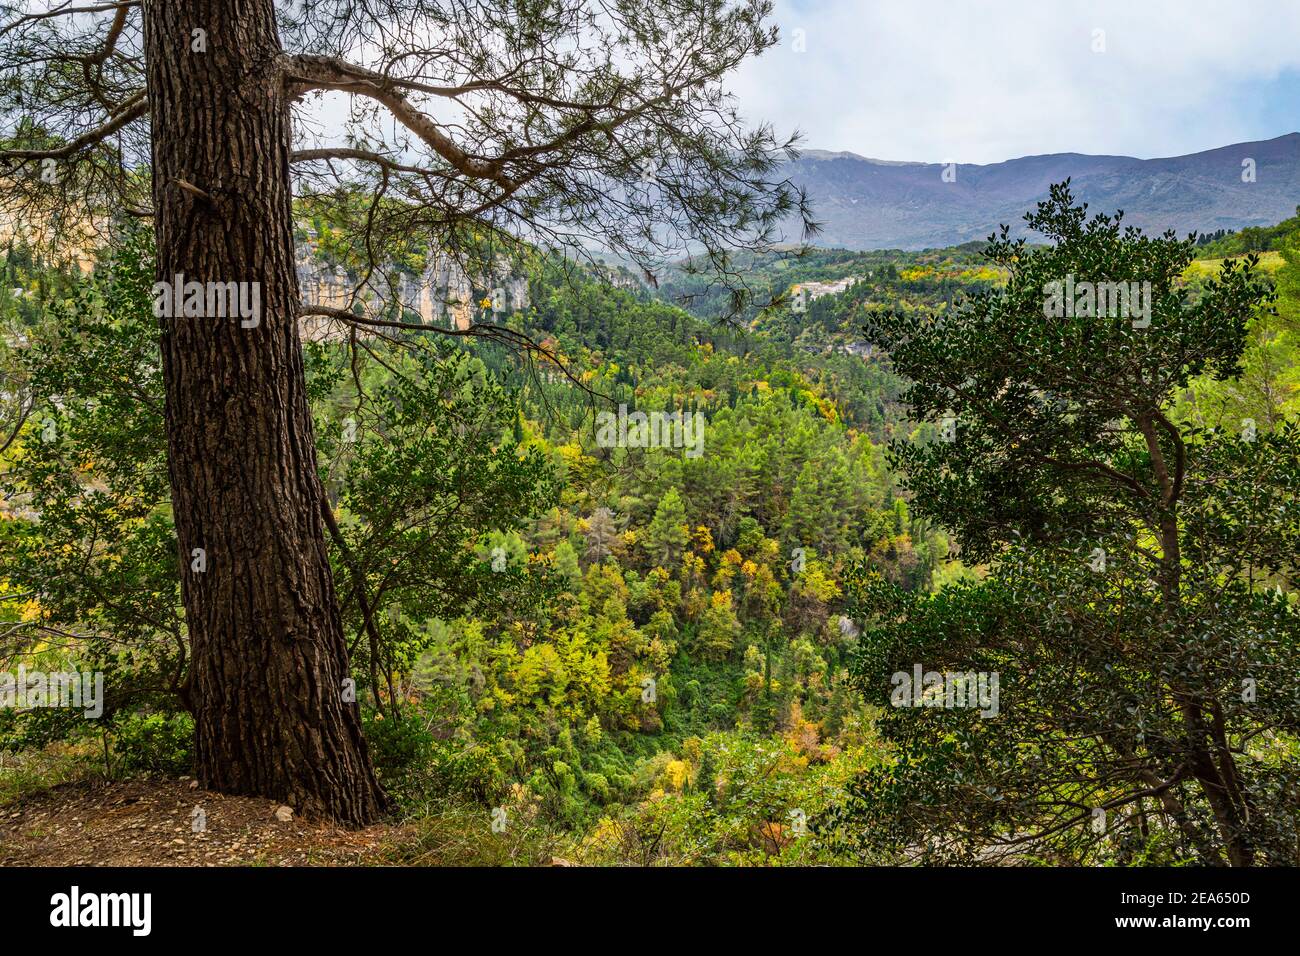 Vista dall'alto dei boschi che coprono la Valle d'Orta. Parco Nazionale della Maiella, Abruzzo, Italia, Europa Foto Stock